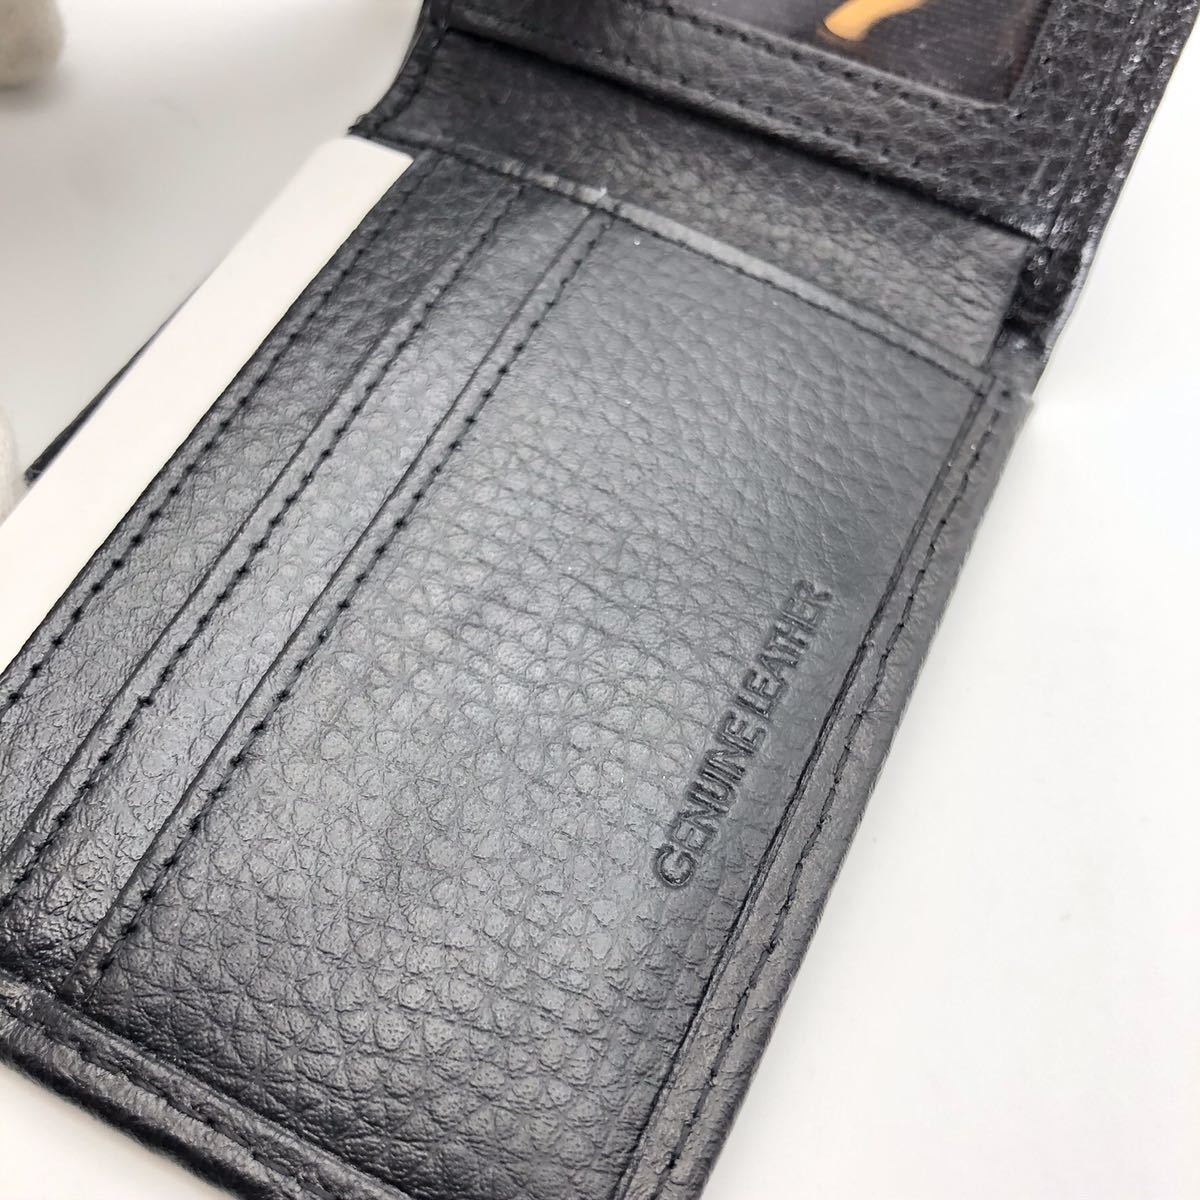  unused ck Calvin Klein leather folding purse 